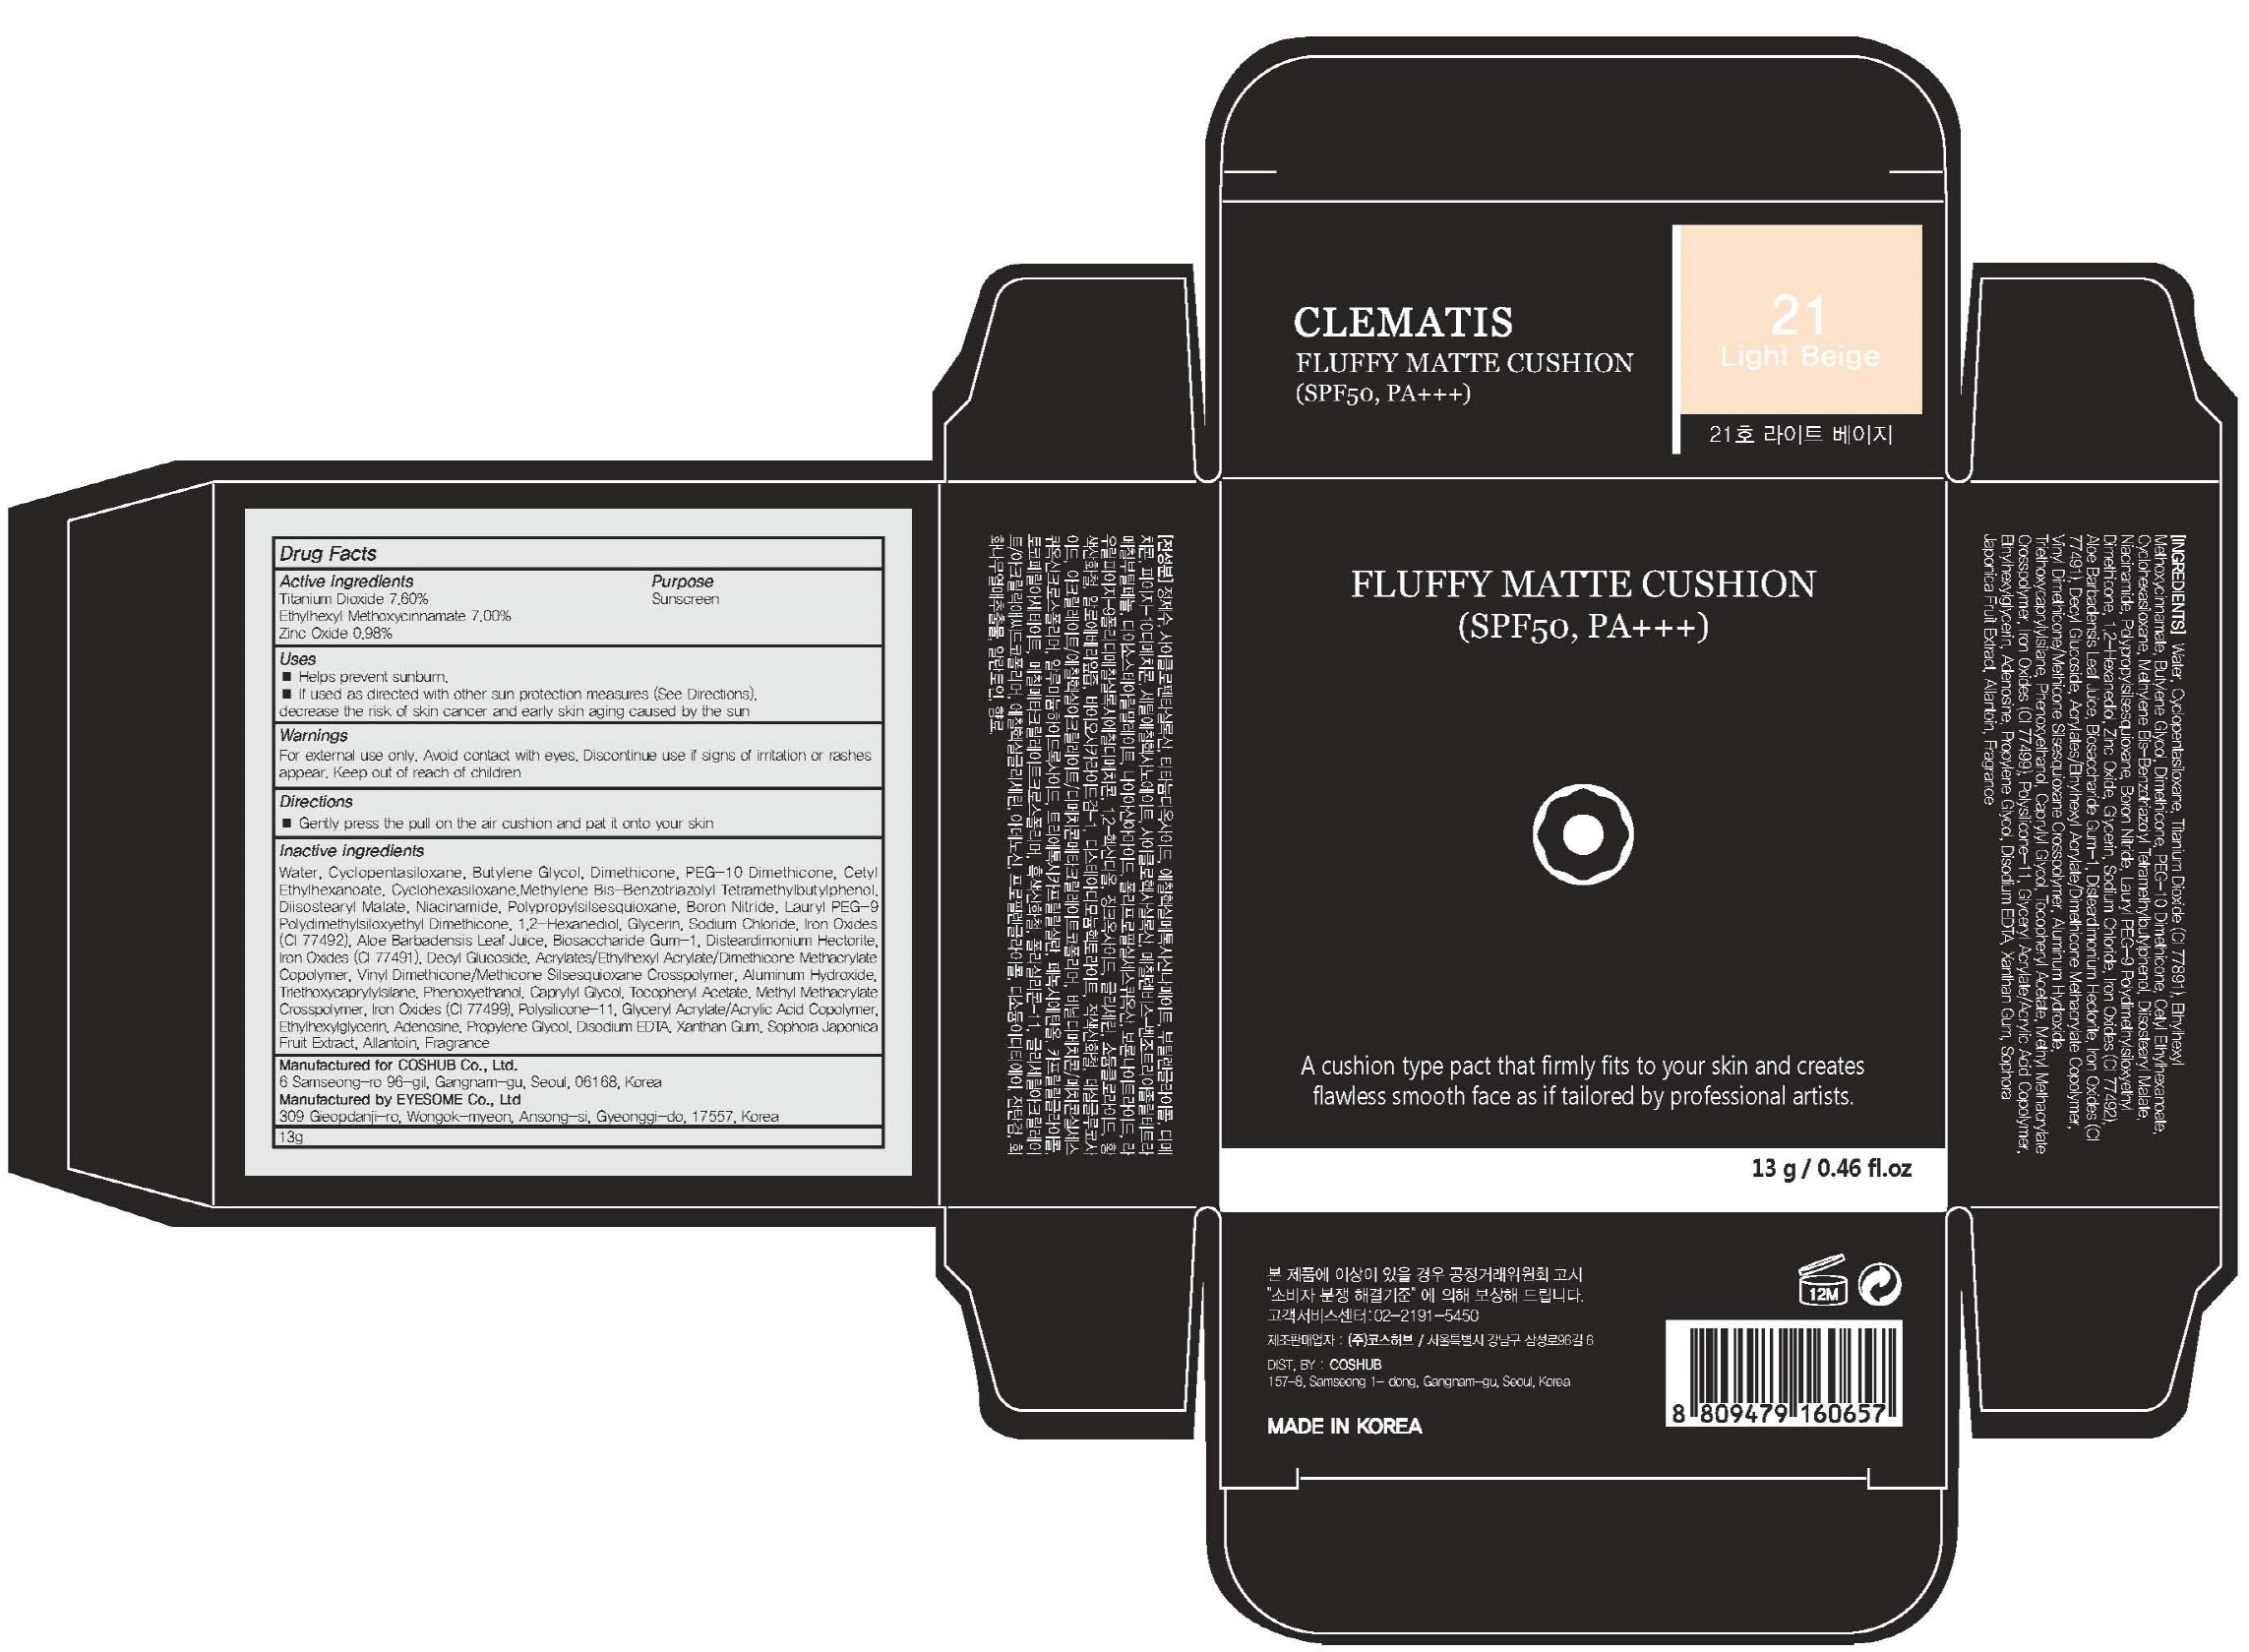 Clematis Fluffy Matte Cushion 21 Light Beige | Titanium Dioxide, Octinoxate, Zinc Oxide Powder Breastfeeding